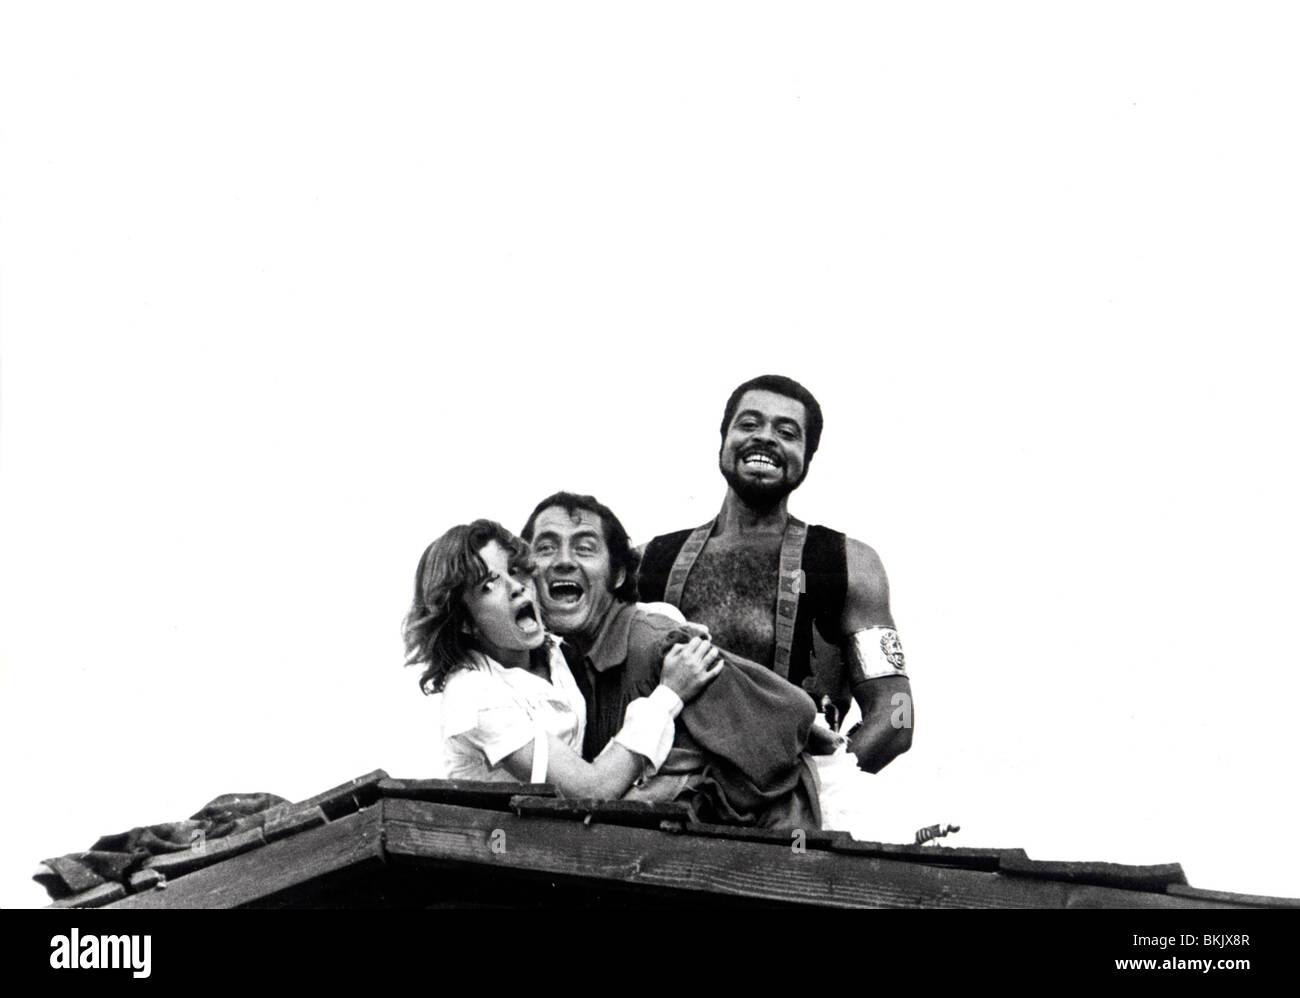 THE SCARLET BUCANEER (1976) SWASHBUCKLER (ALT) GENEVIEVE BUJOLD, ROBERT SHAW, JAMES EARL JONES SBUC 003 P Stock Photo